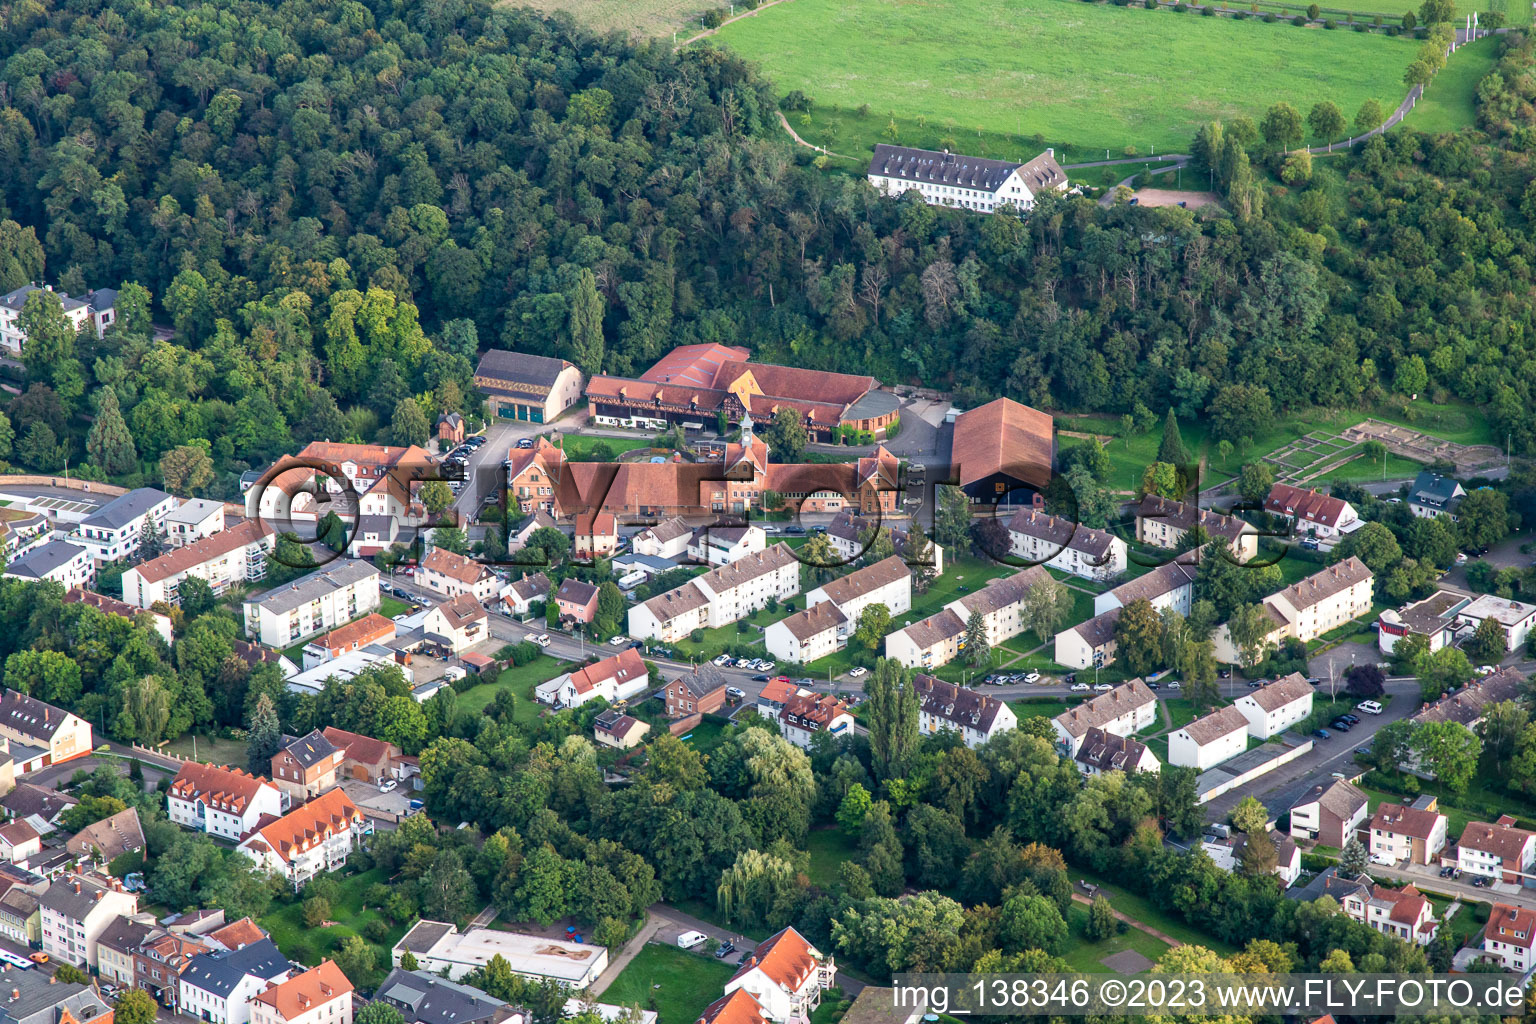 Vue aérienne de Musée Römerhalle dans le parc du château à Bad Kreuznach dans le département Rhénanie-Palatinat, Allemagne